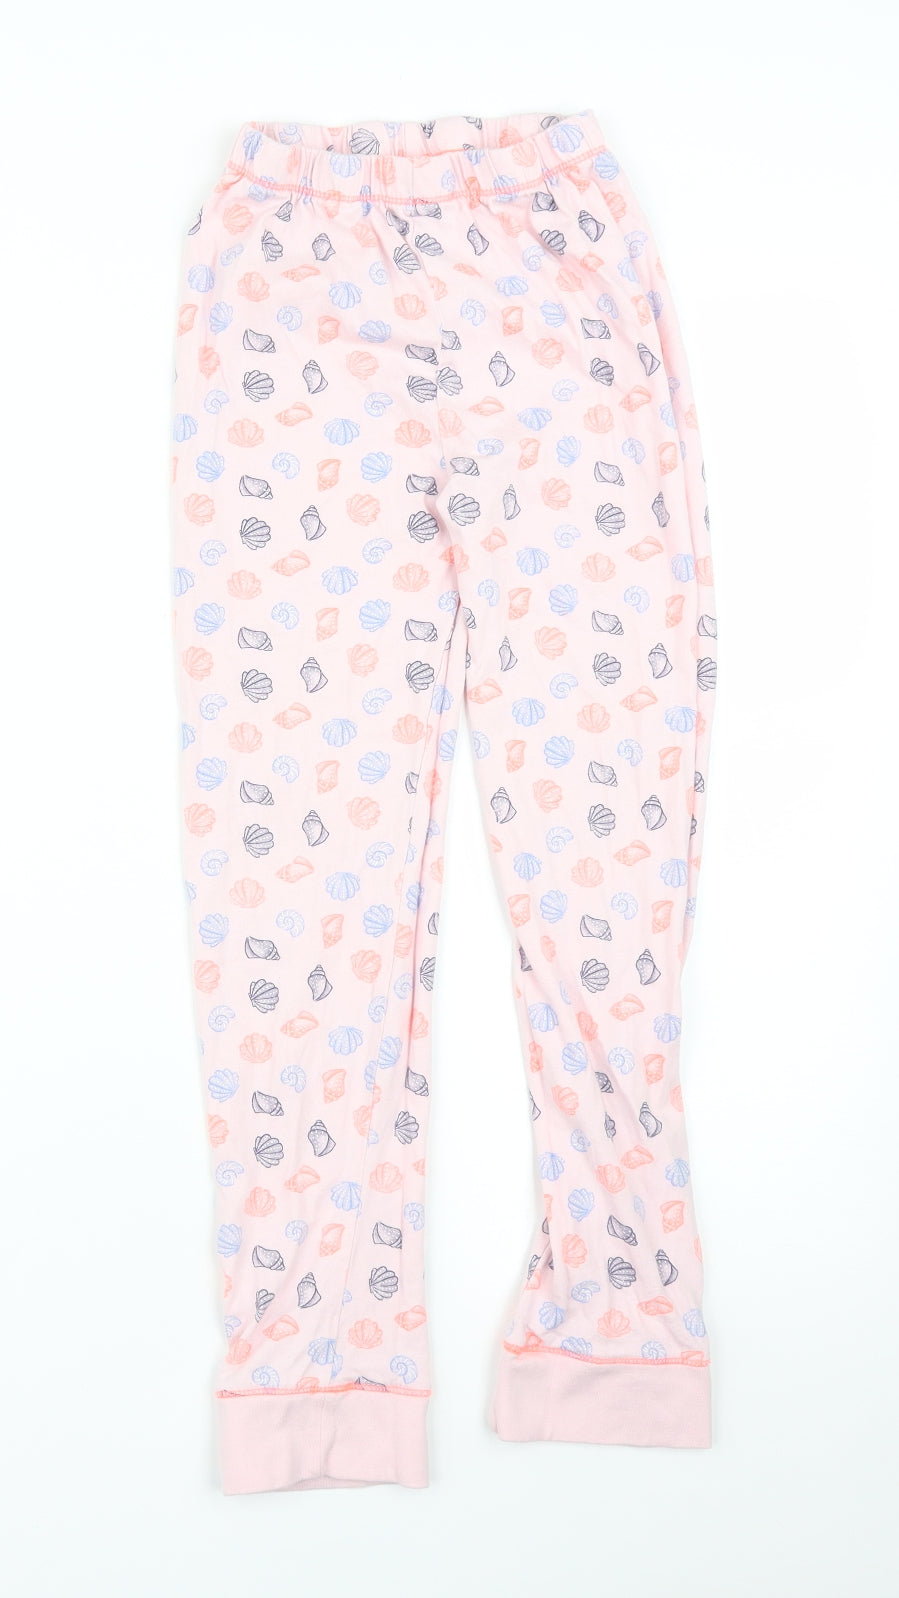 TU Girls Pink Solid   Pyjama Pants Size 9-10 Years  - SEASHELLS